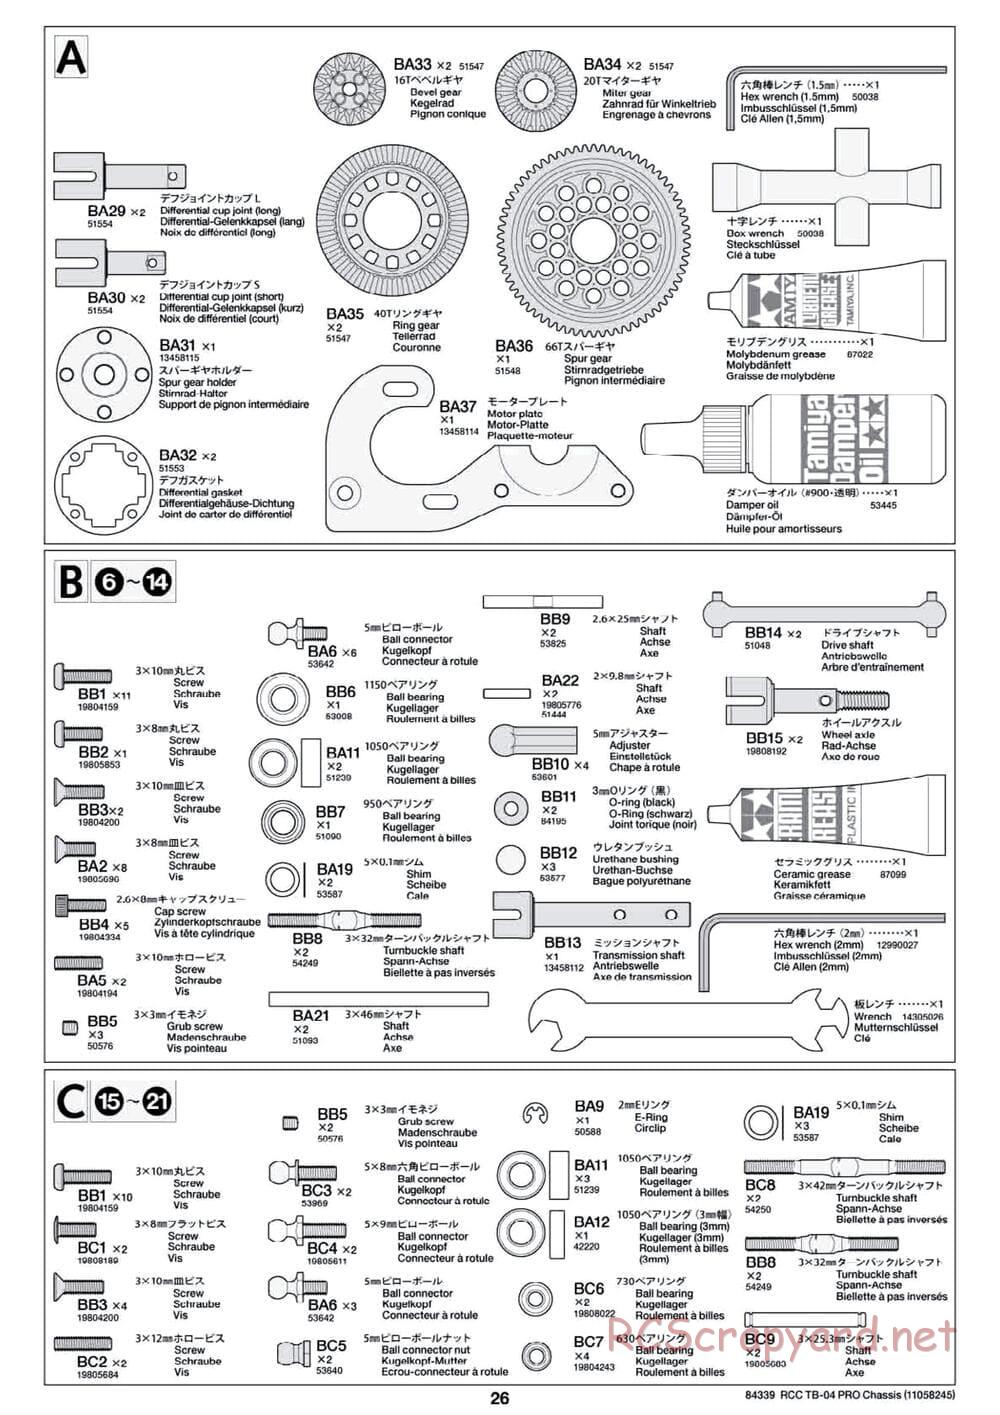 Tamiya - TB-04 Pro Chassis - Manual - Page 26